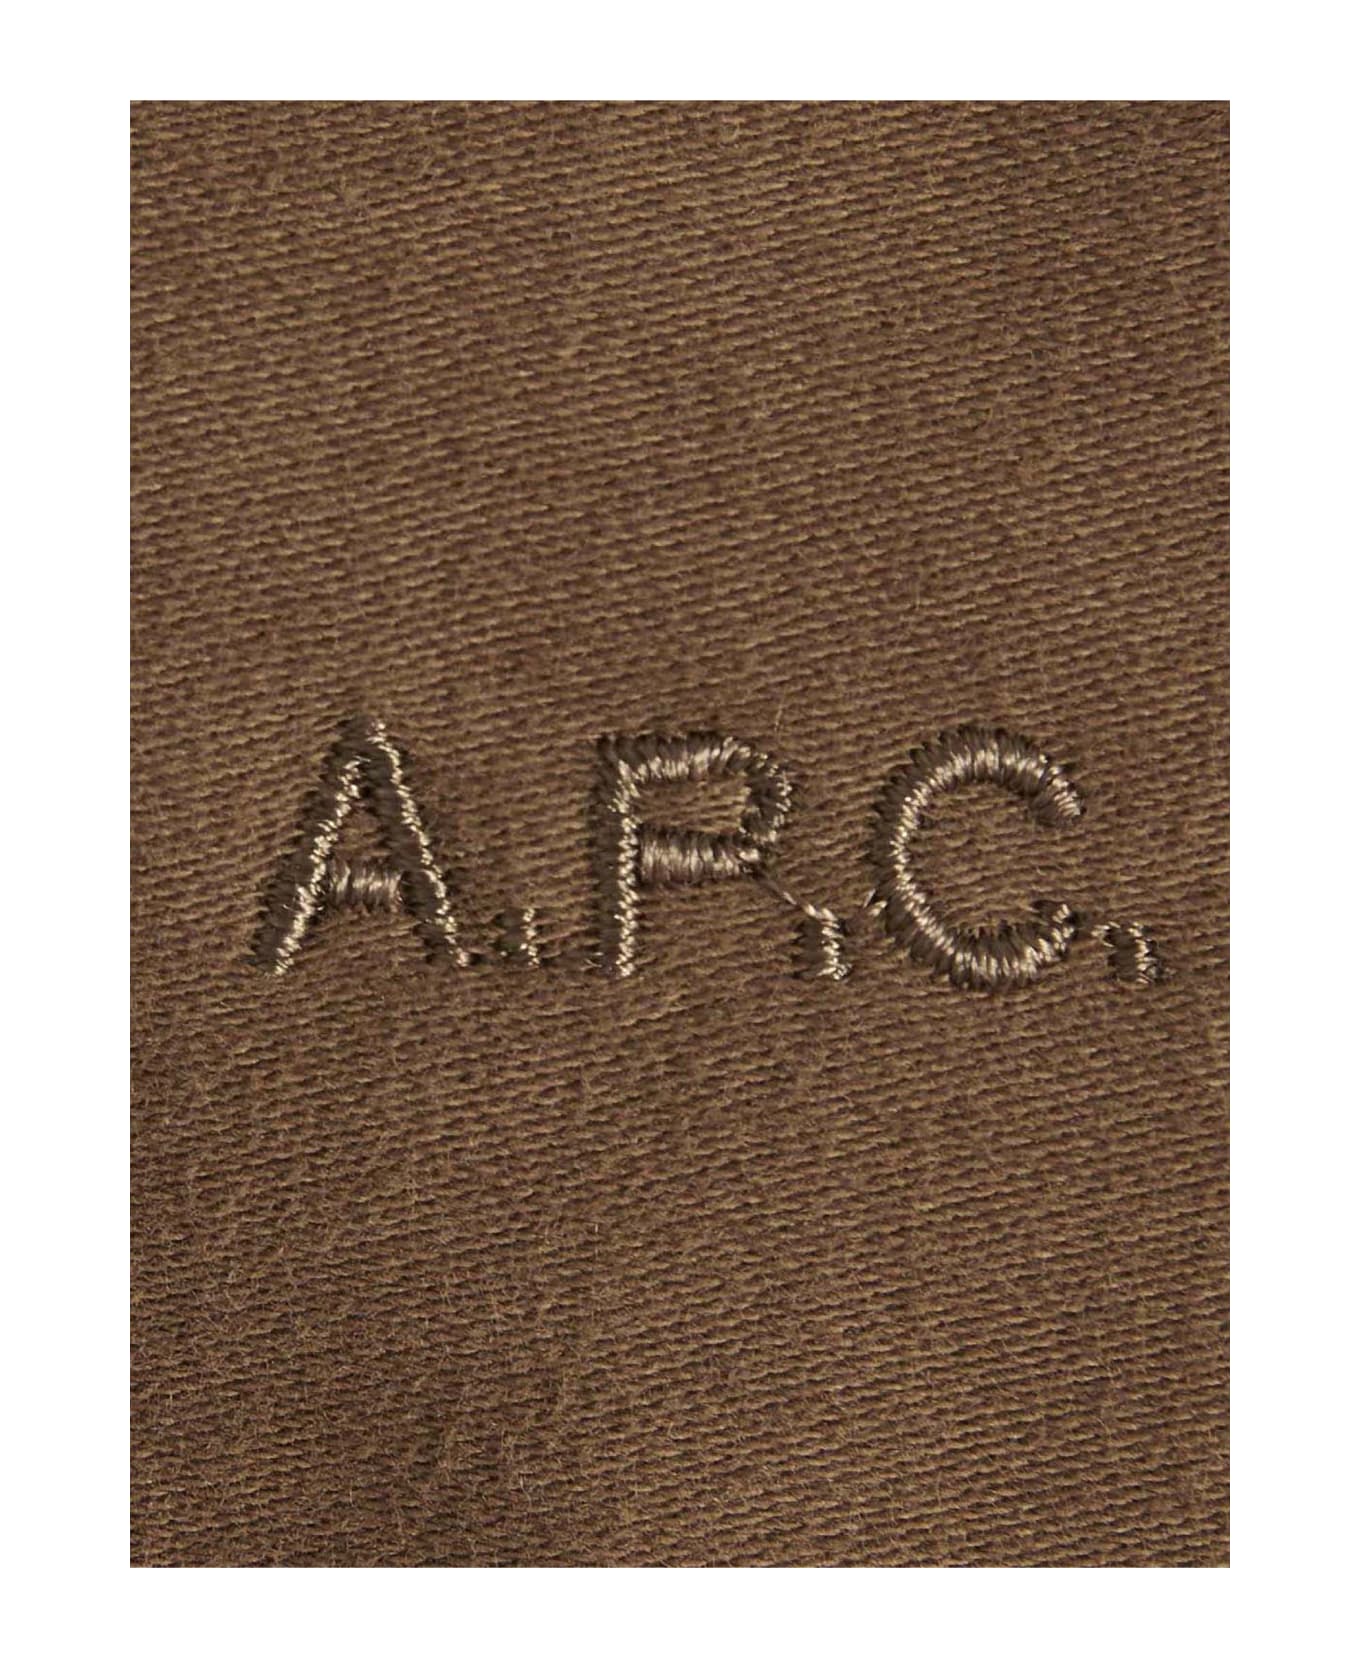 A.P.C. Gilles Camel Cotton Jacket - BEIGE